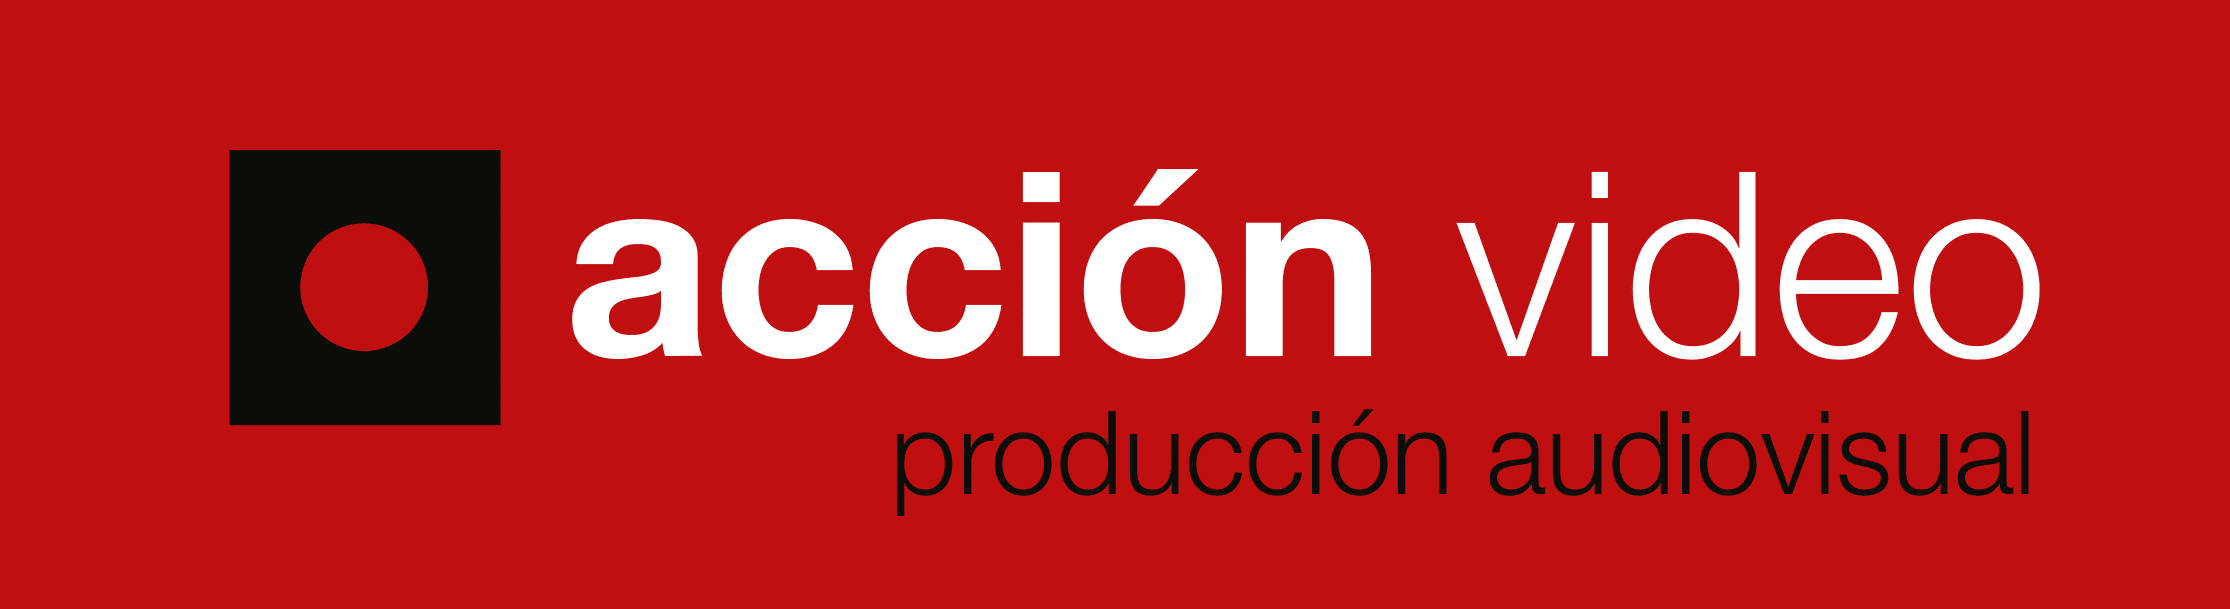 Acción Video logo catálogo de proveedores cocipa